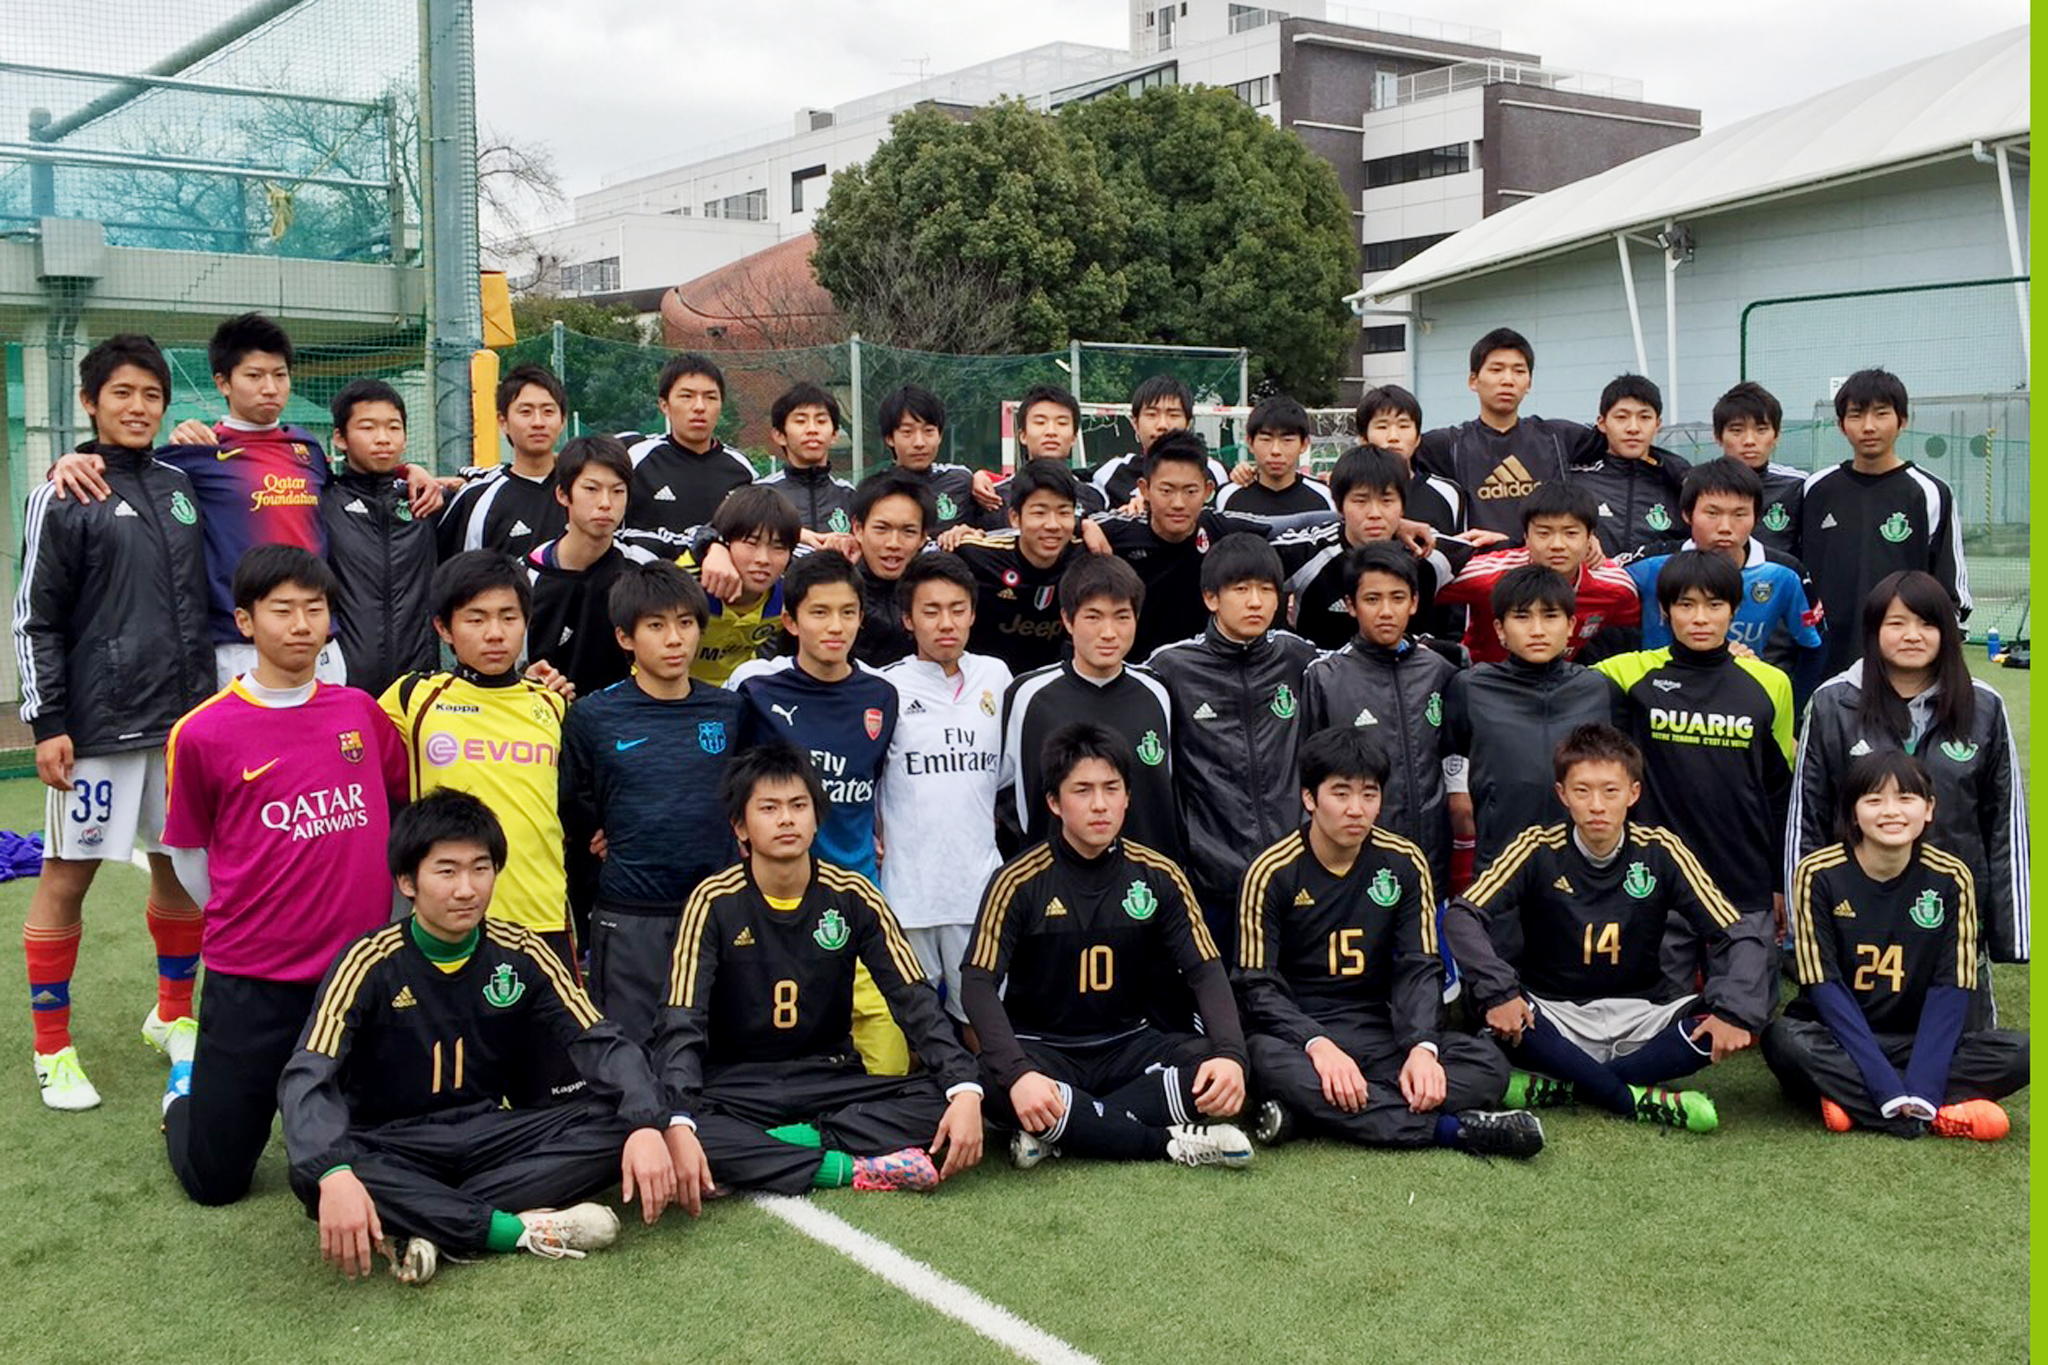 橘学苑サッカー部profile Tachibana Gakuen Football Club